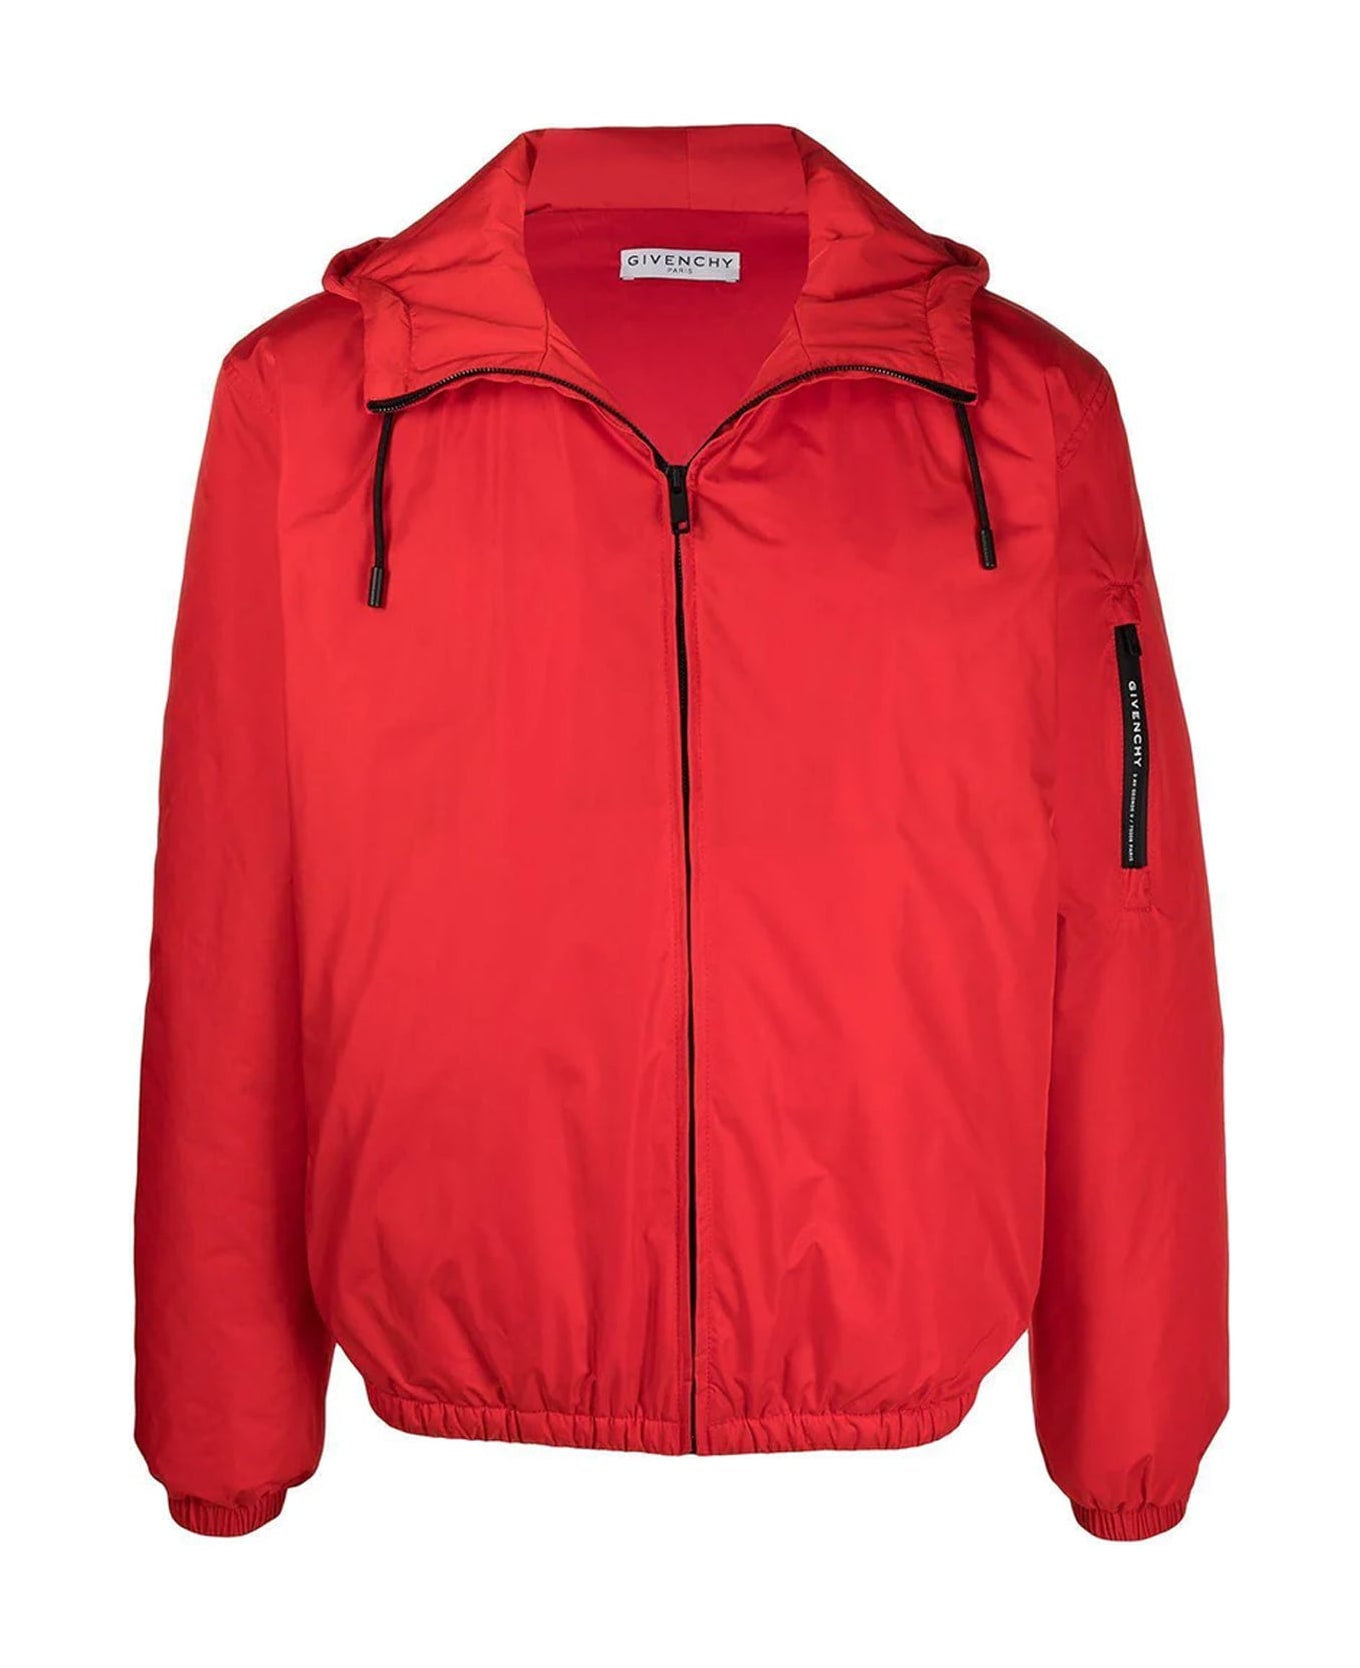 Givenchy Windbreaker Jacket - Red ジャケット